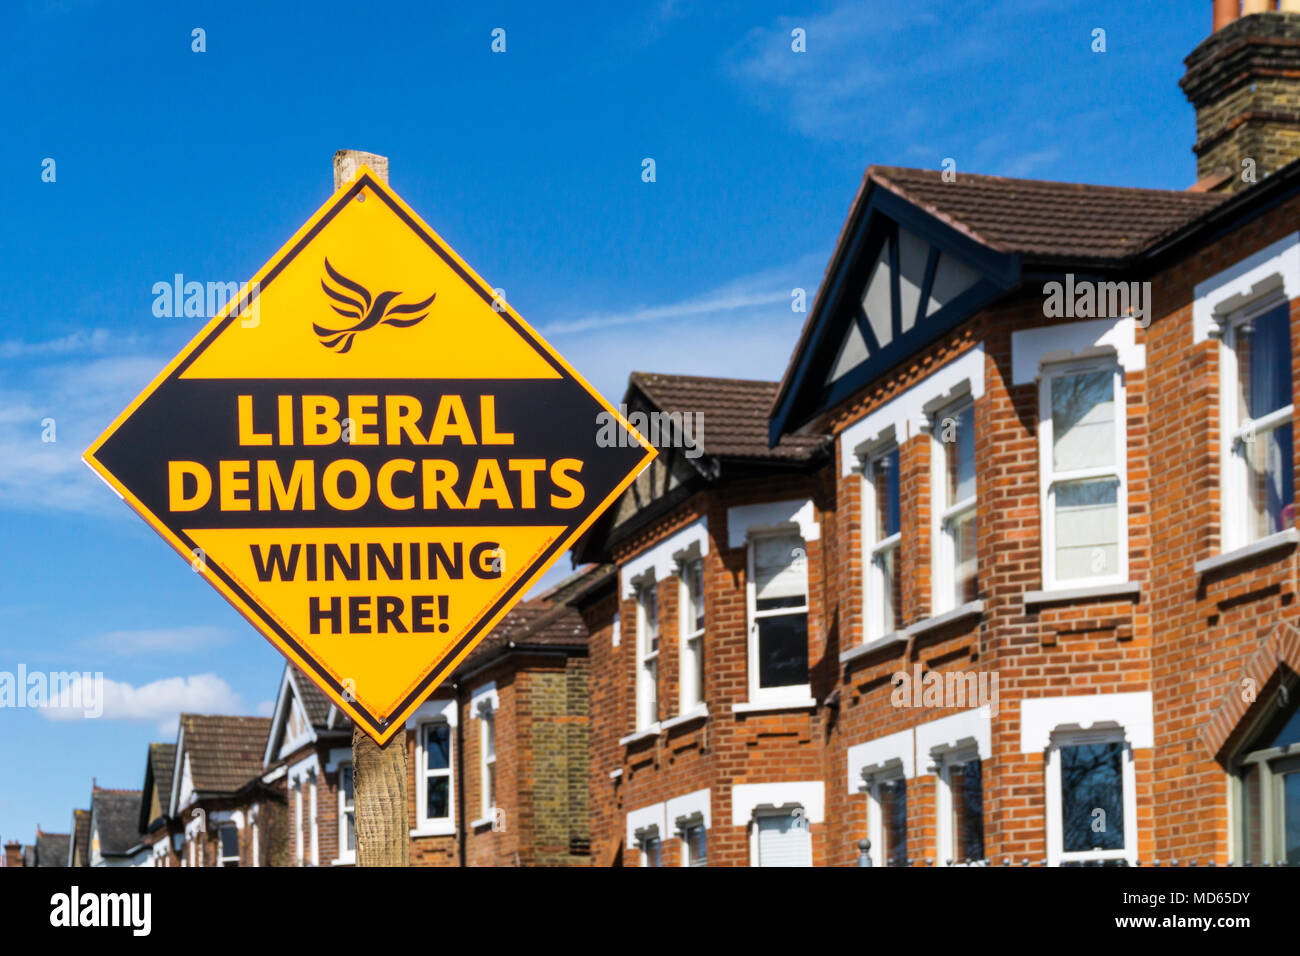 Eine liberale Demokraten Wahl unterzeichnen im Londoner Stadtteil Bromley, South London, bevor er im Mai 2018 Kommunalwahlen. S-Gehäuse im Hintergrund. Stockfoto